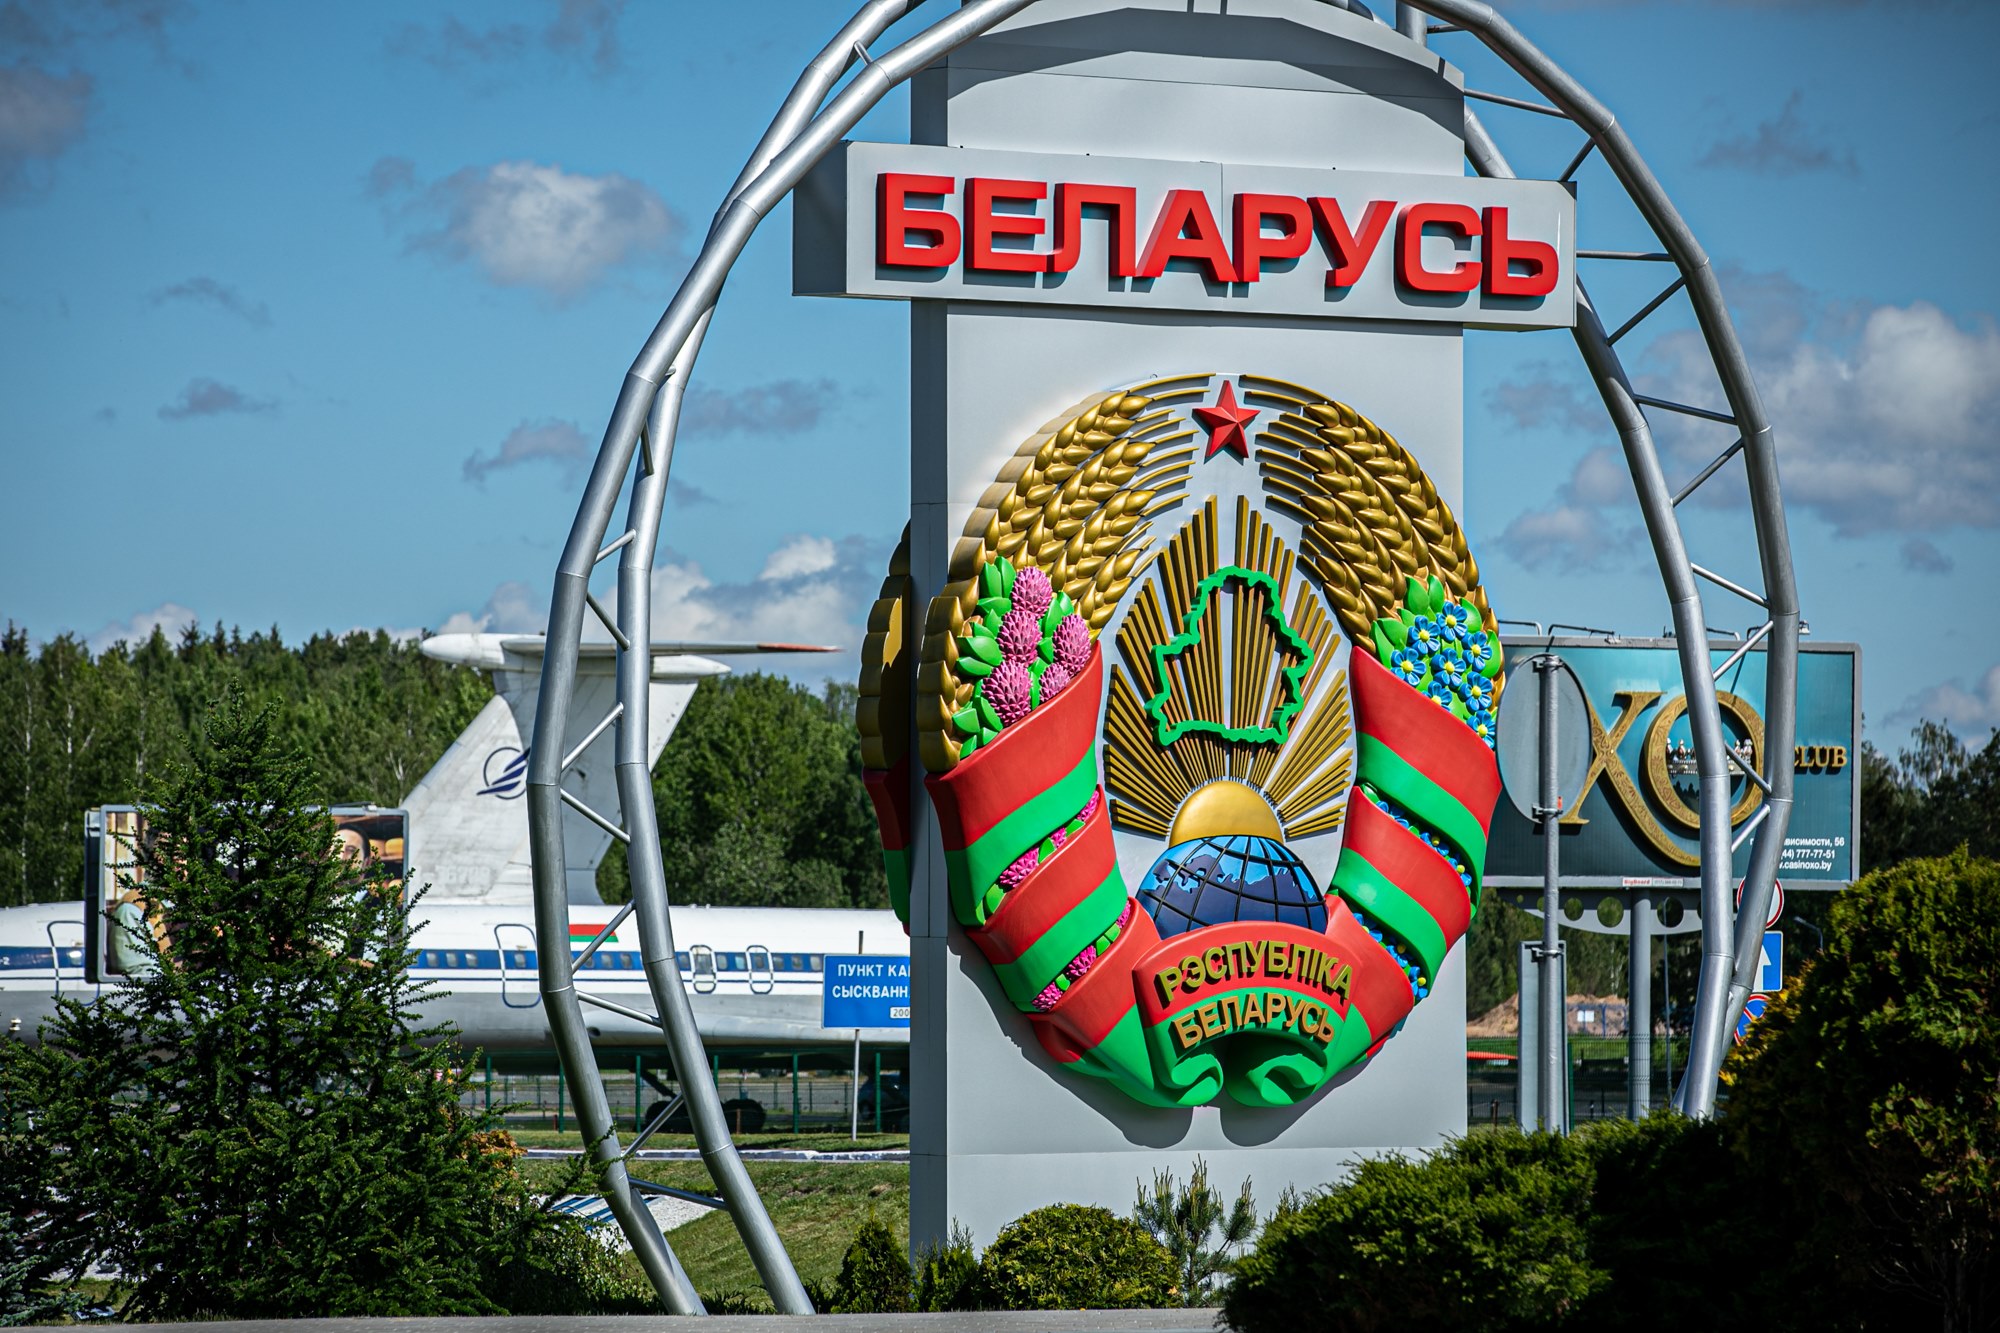 Na Białorusi trwają represje wobec mniejszości polskiej i opozycji demokratycznej